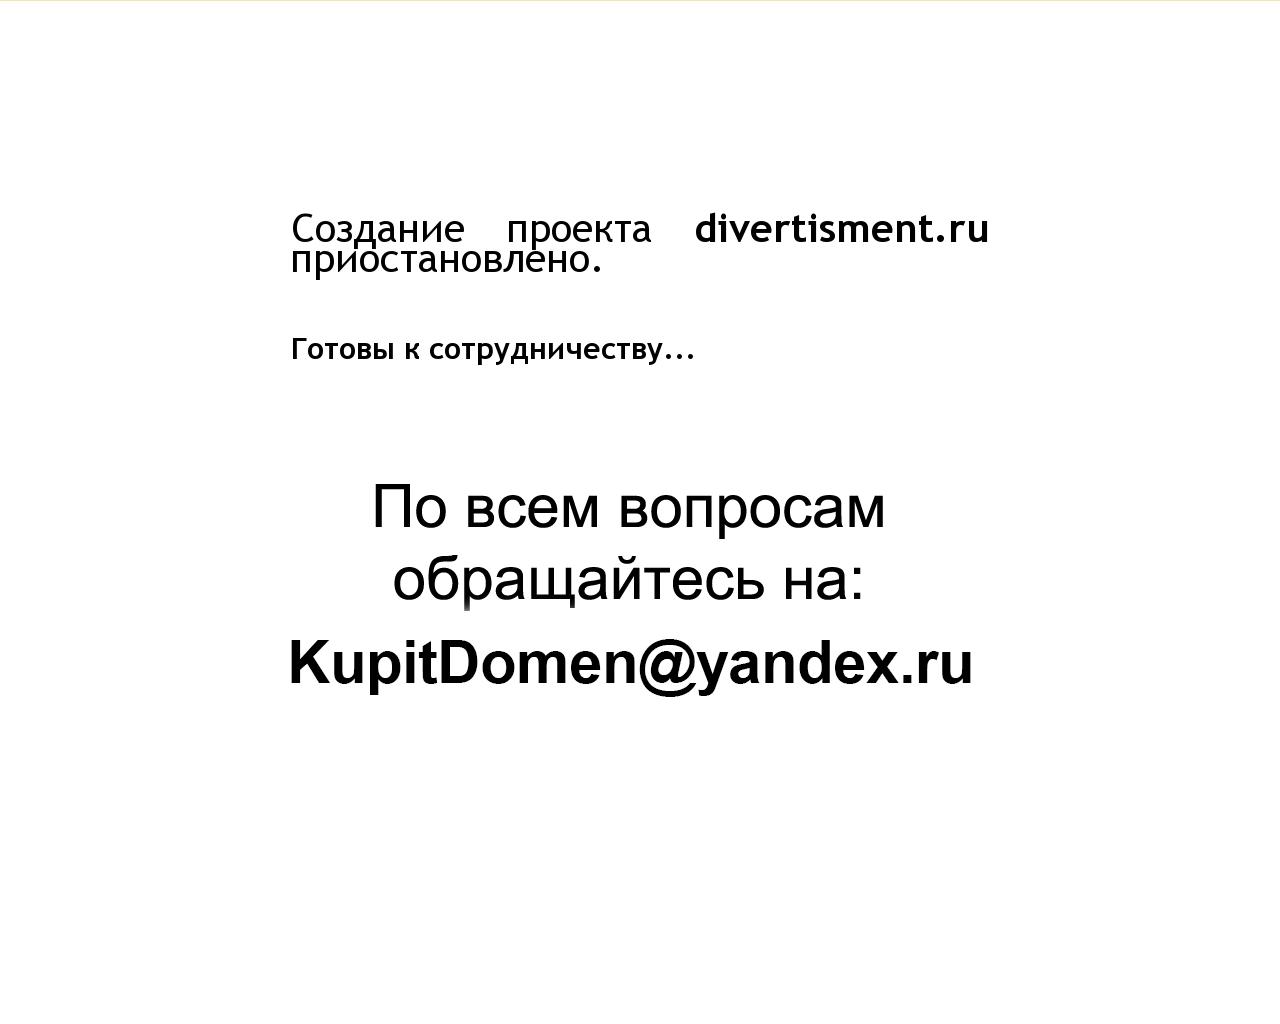 Изображение сайта divertisment.ru в разрешении 1280x1024